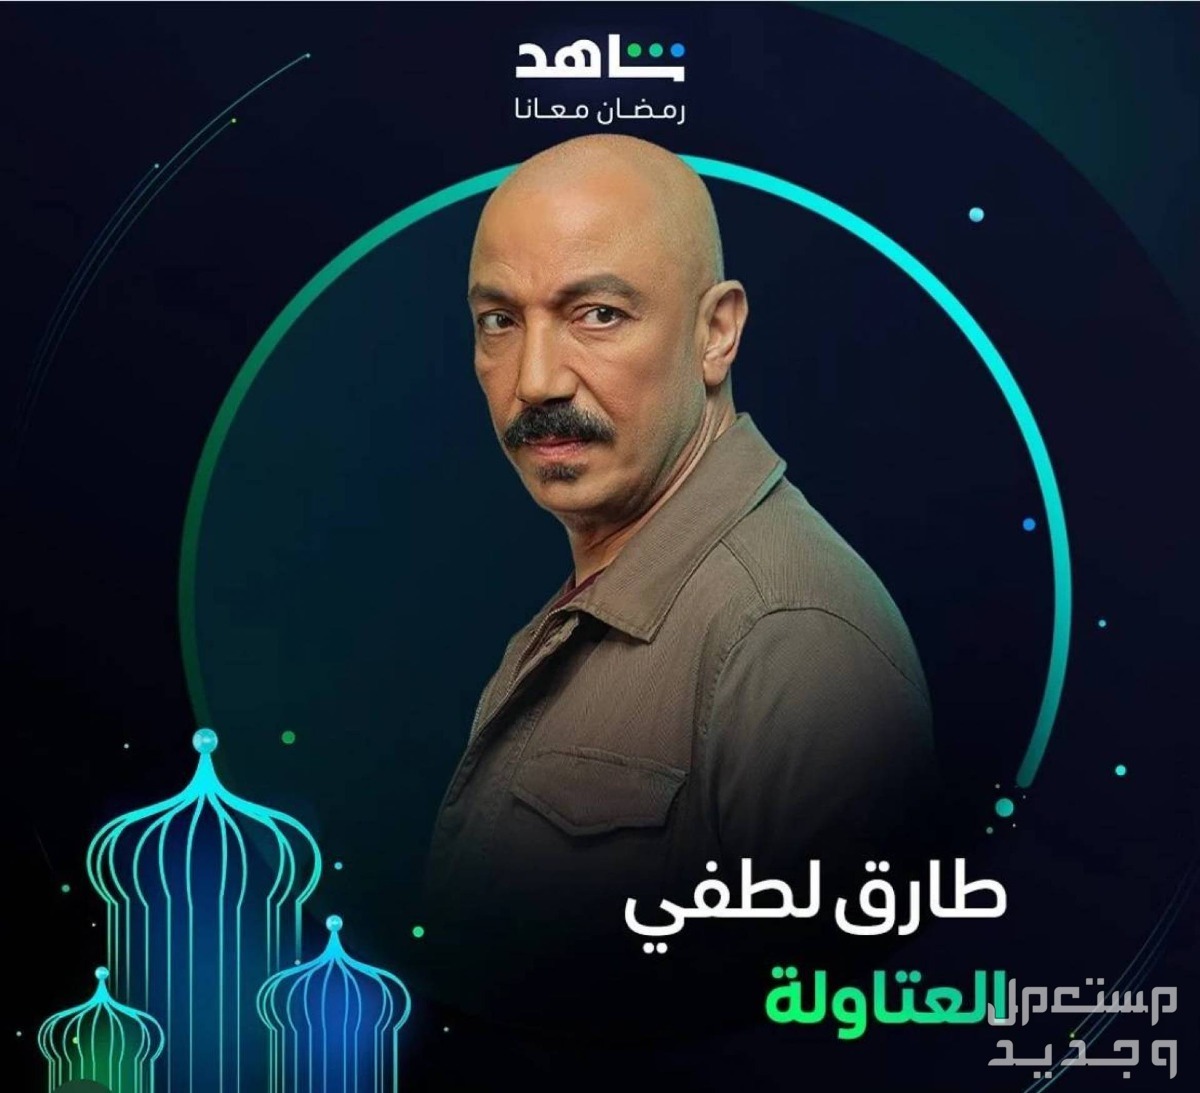 مسلسل العتاولة الحلقة 26 السادسة والعشرون الأكثر مشاهدة في عمان طارق لطفي في العتاولة